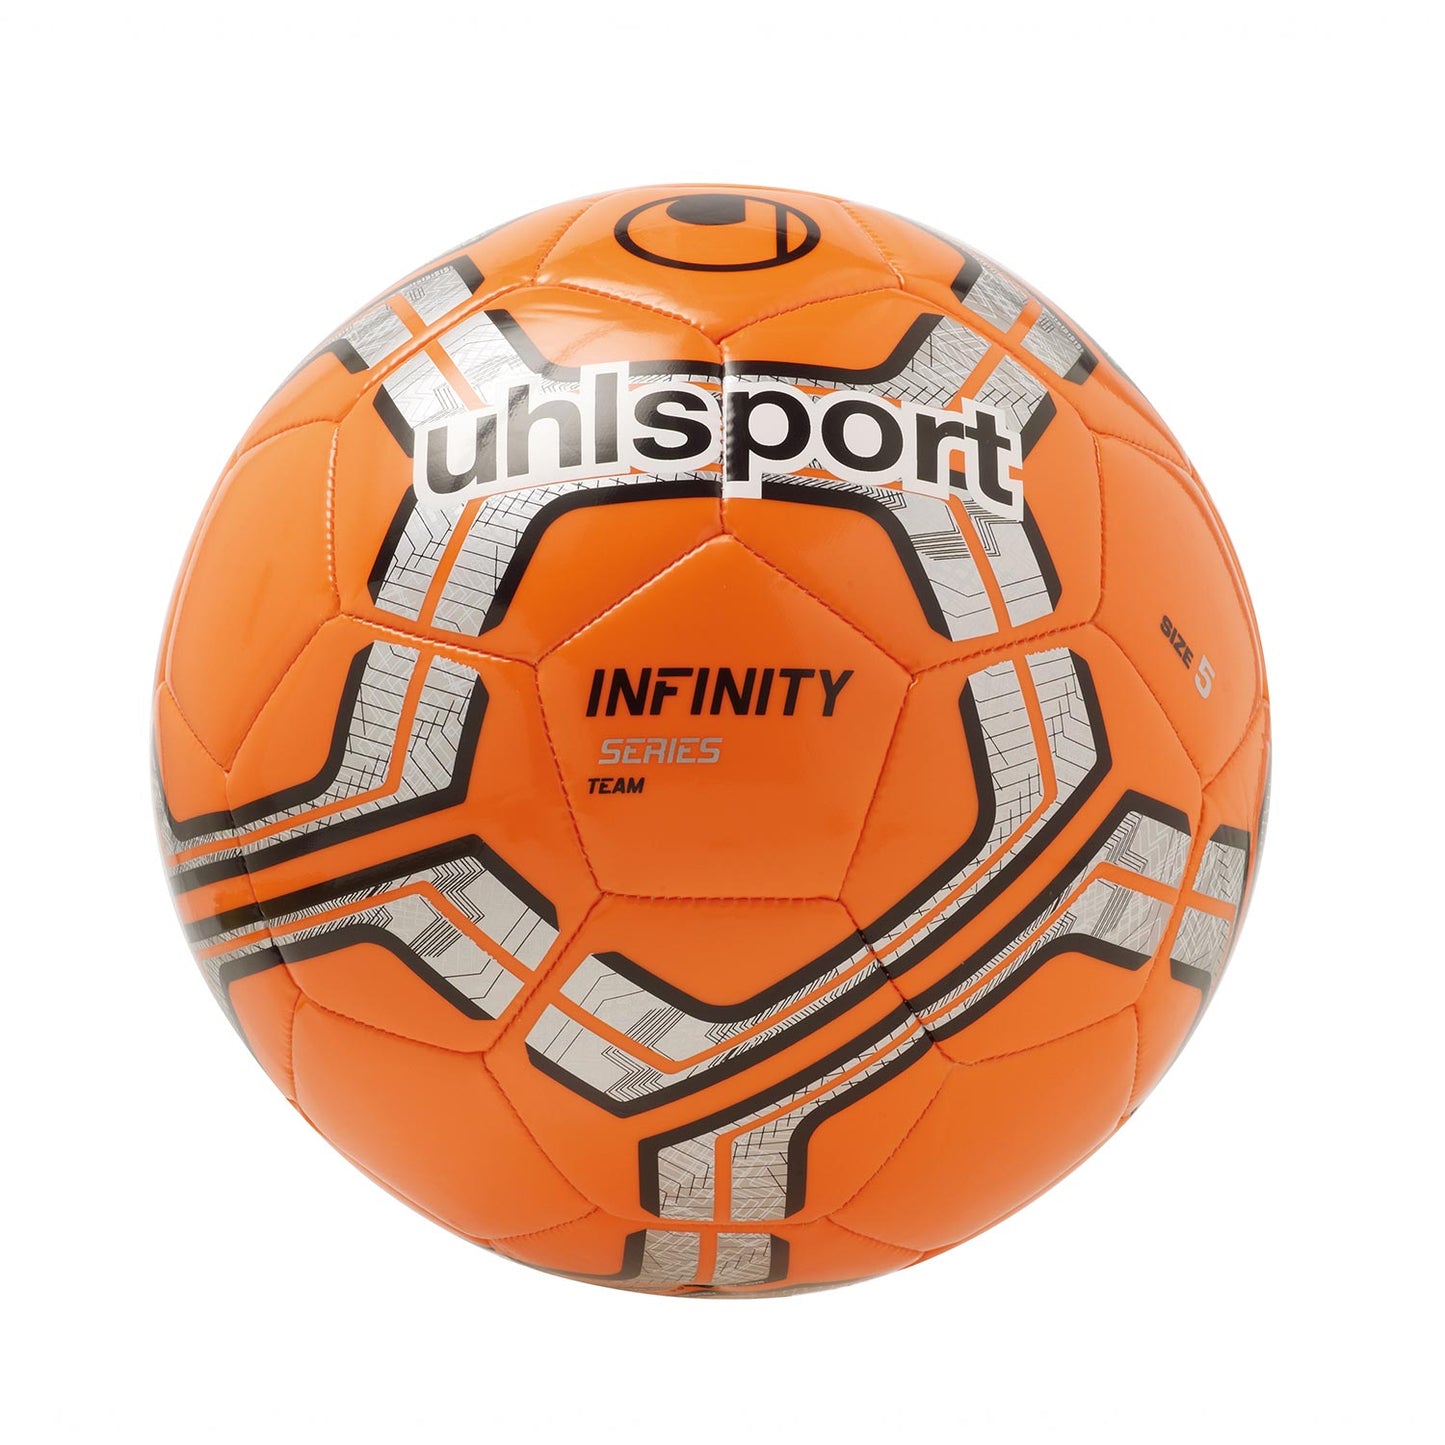 Fussball Infinity Team uhlsport Gr. 5